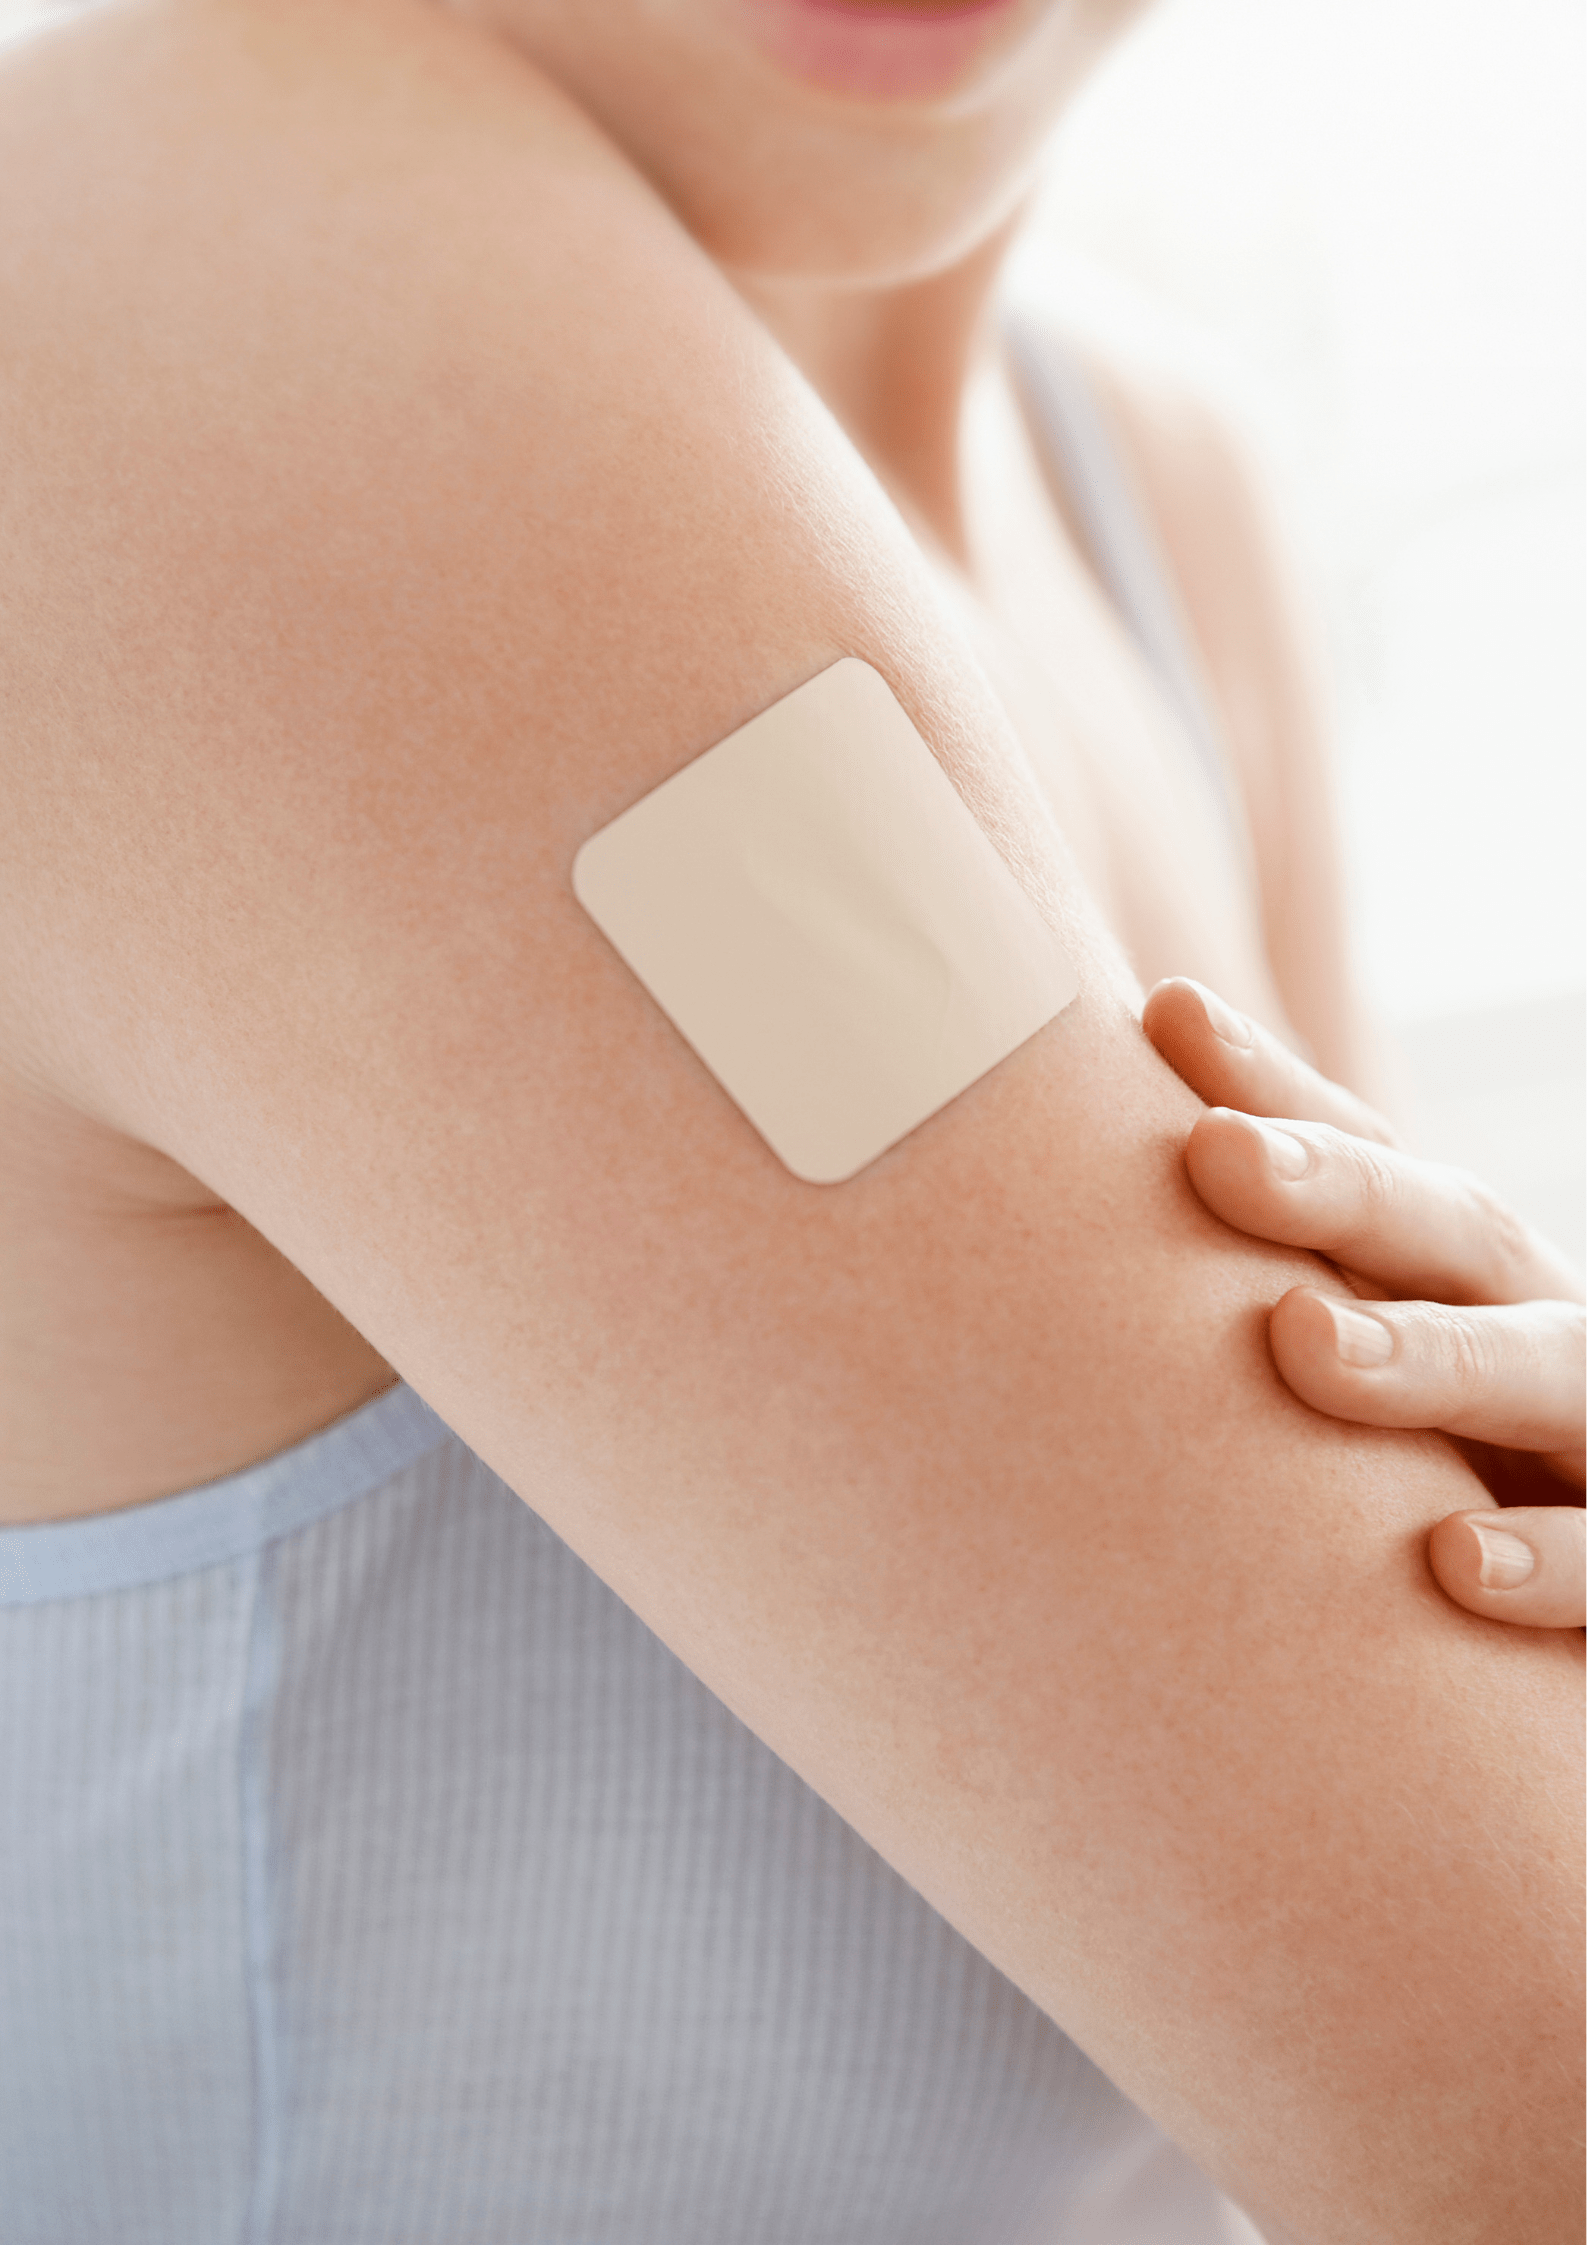 Ceban HomeCare - toediening specialistische medicatie - toediening via de huid